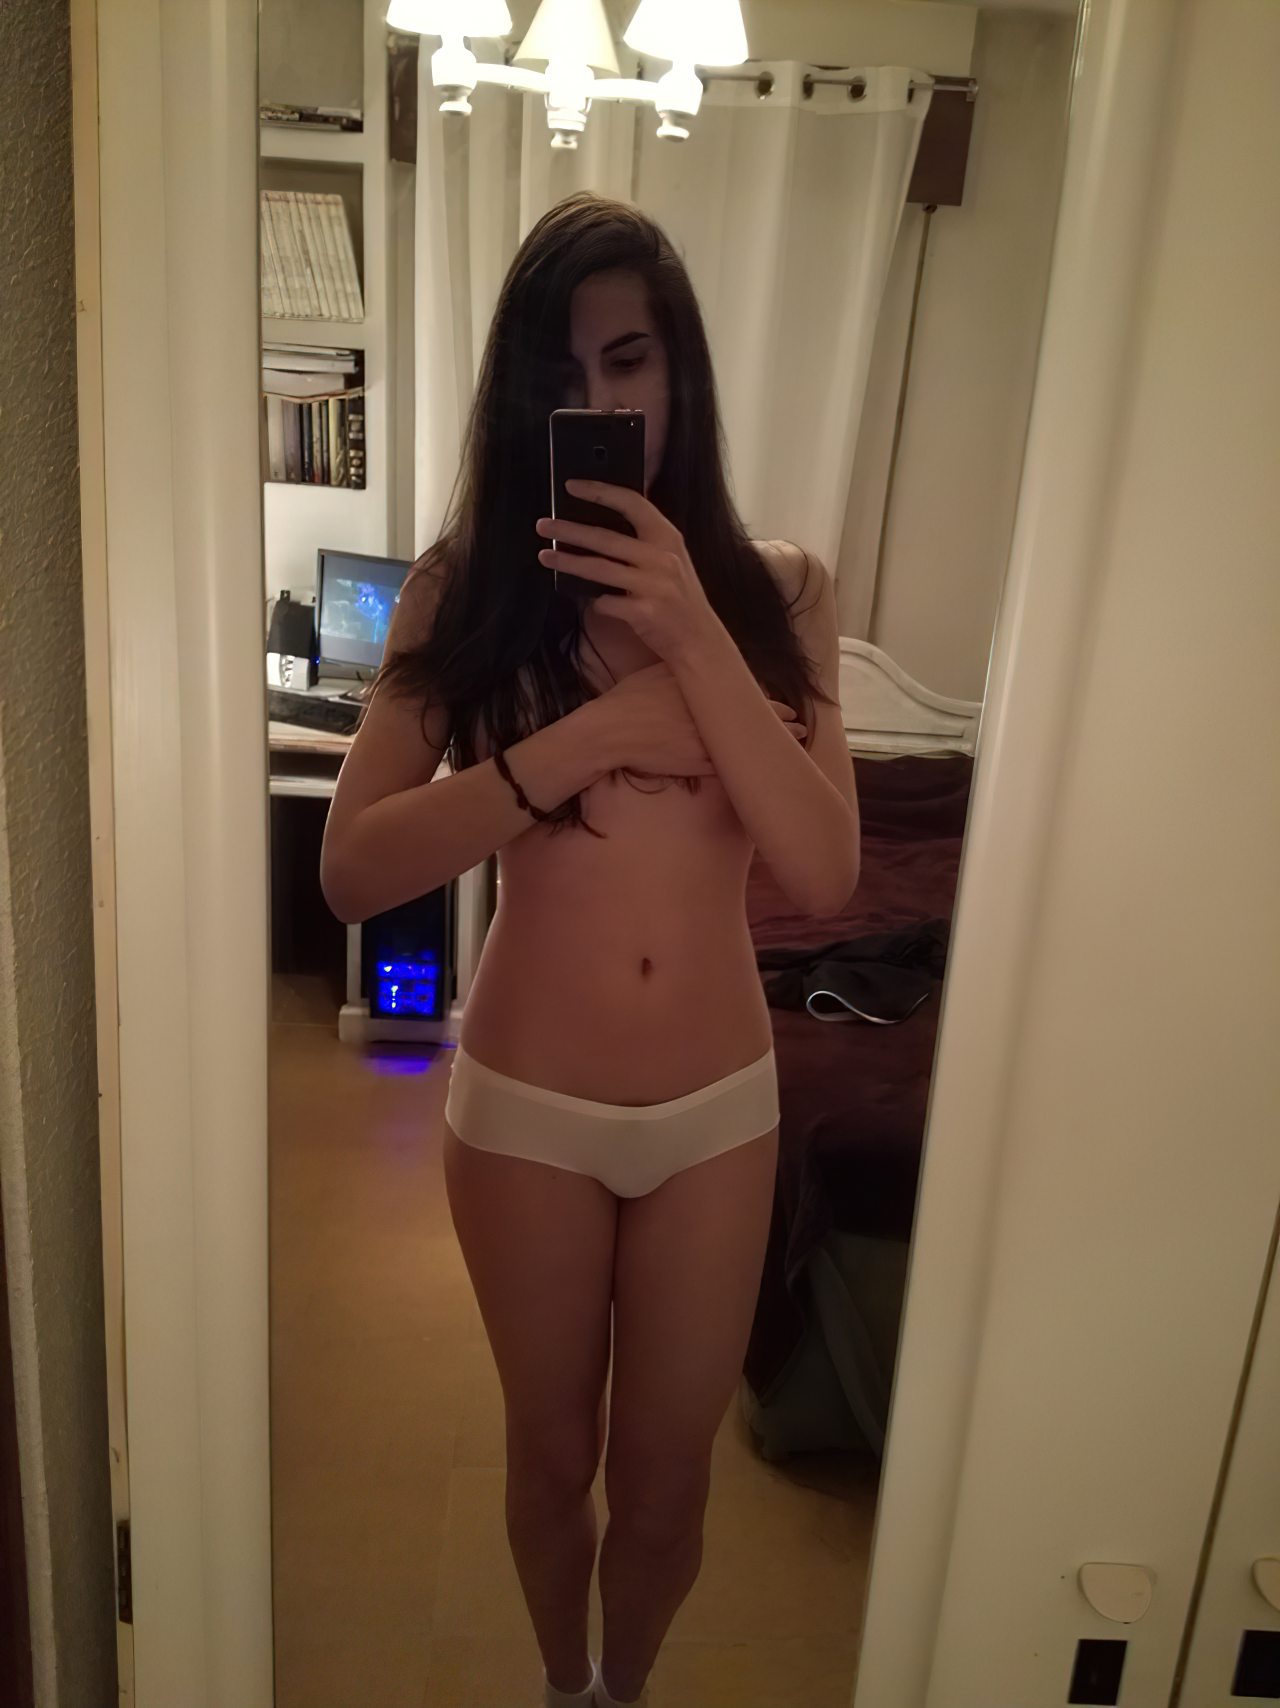 Travesti Adolescente Mostrando Corpo (3)